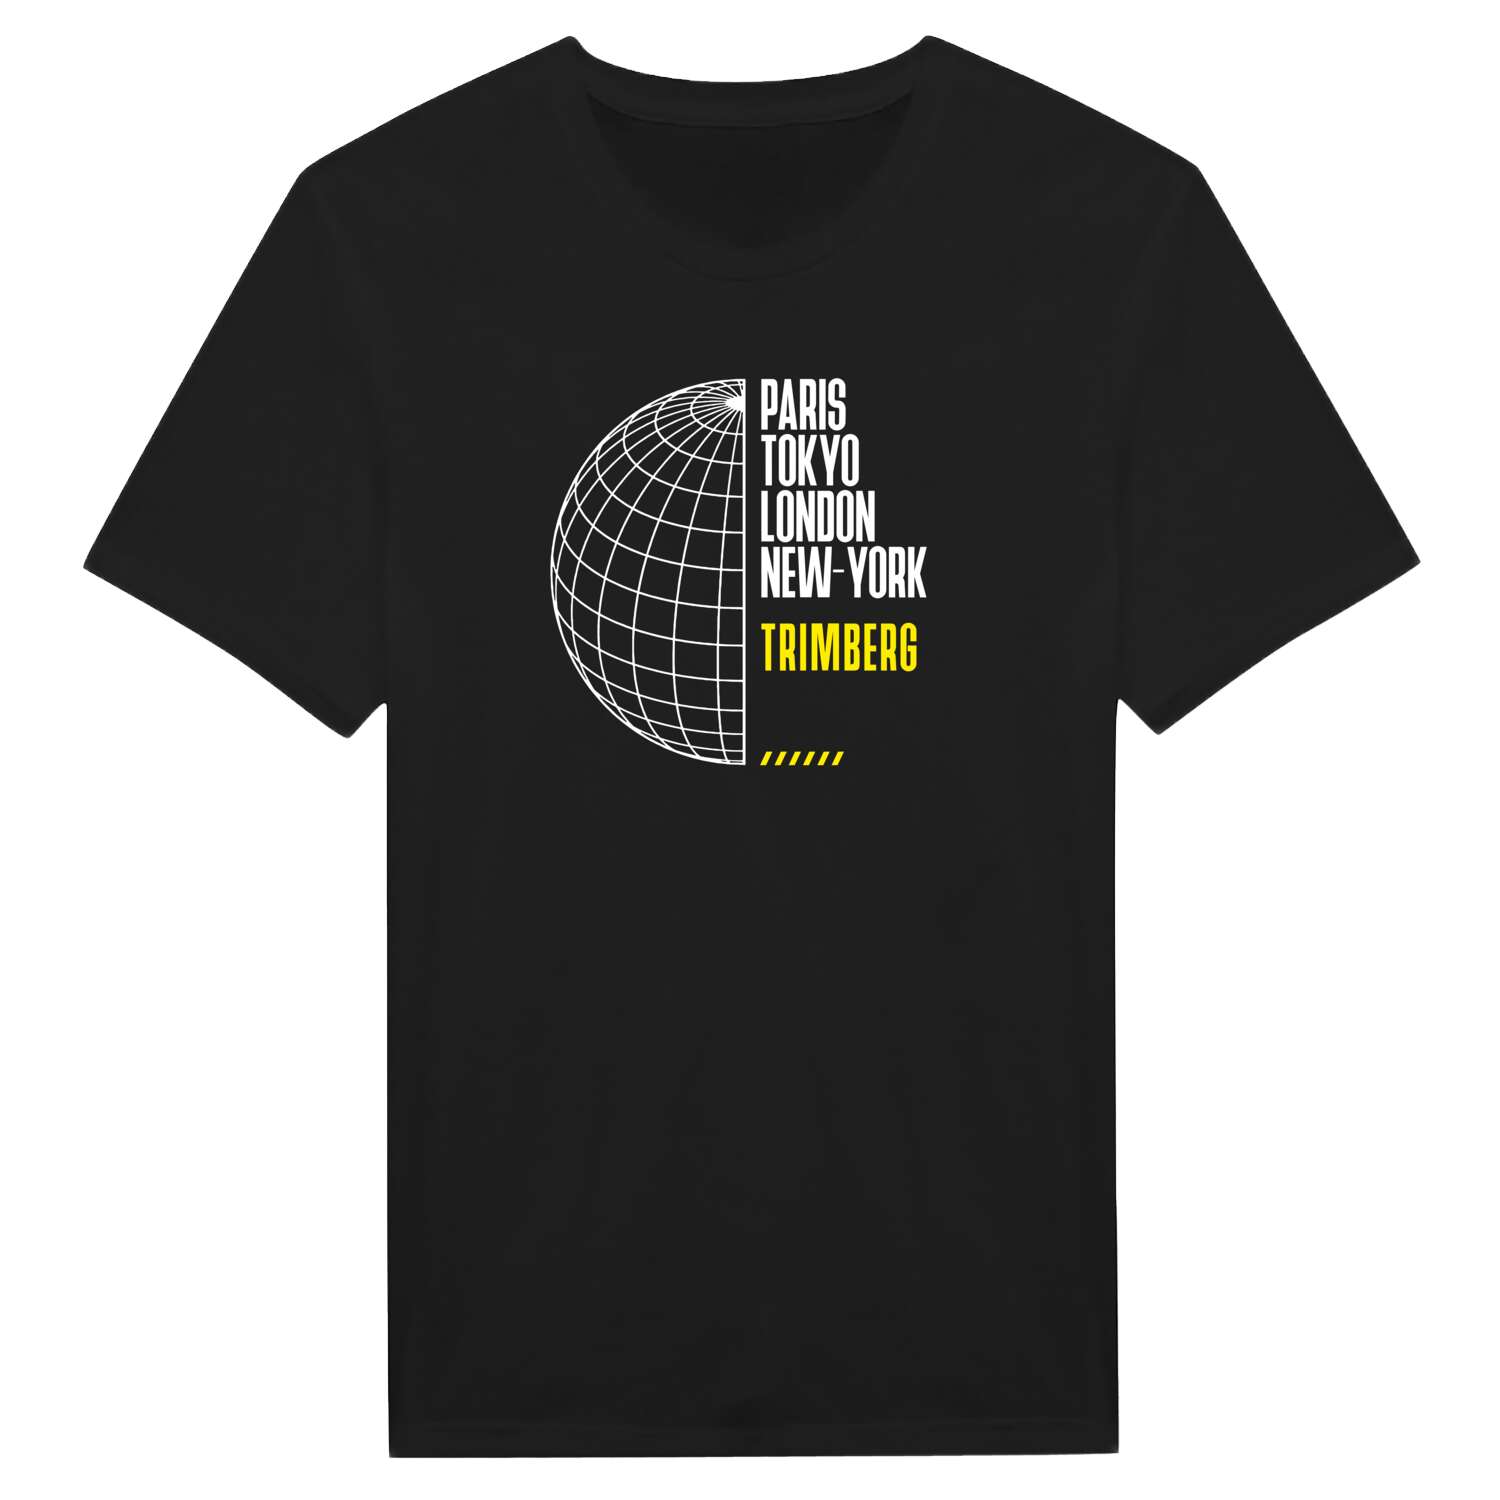 Trimberg T-Shirt »Paris Tokyo London«